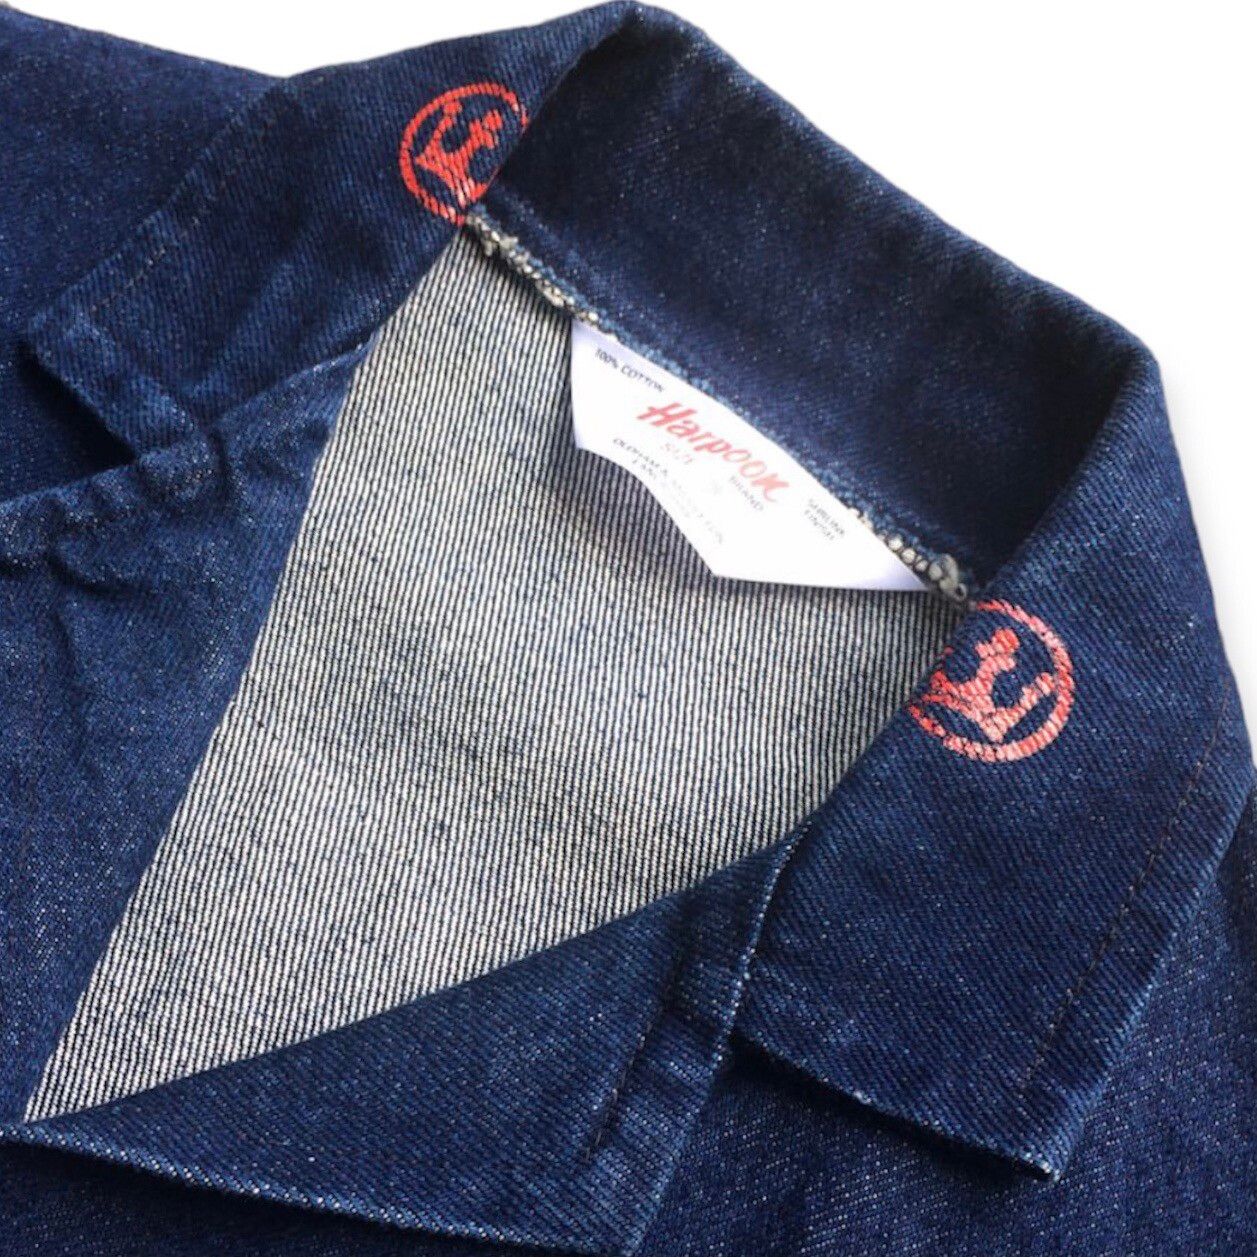 Vintage Vintage Harpoon British Work Wear Denim Chore Jacket | Grailed